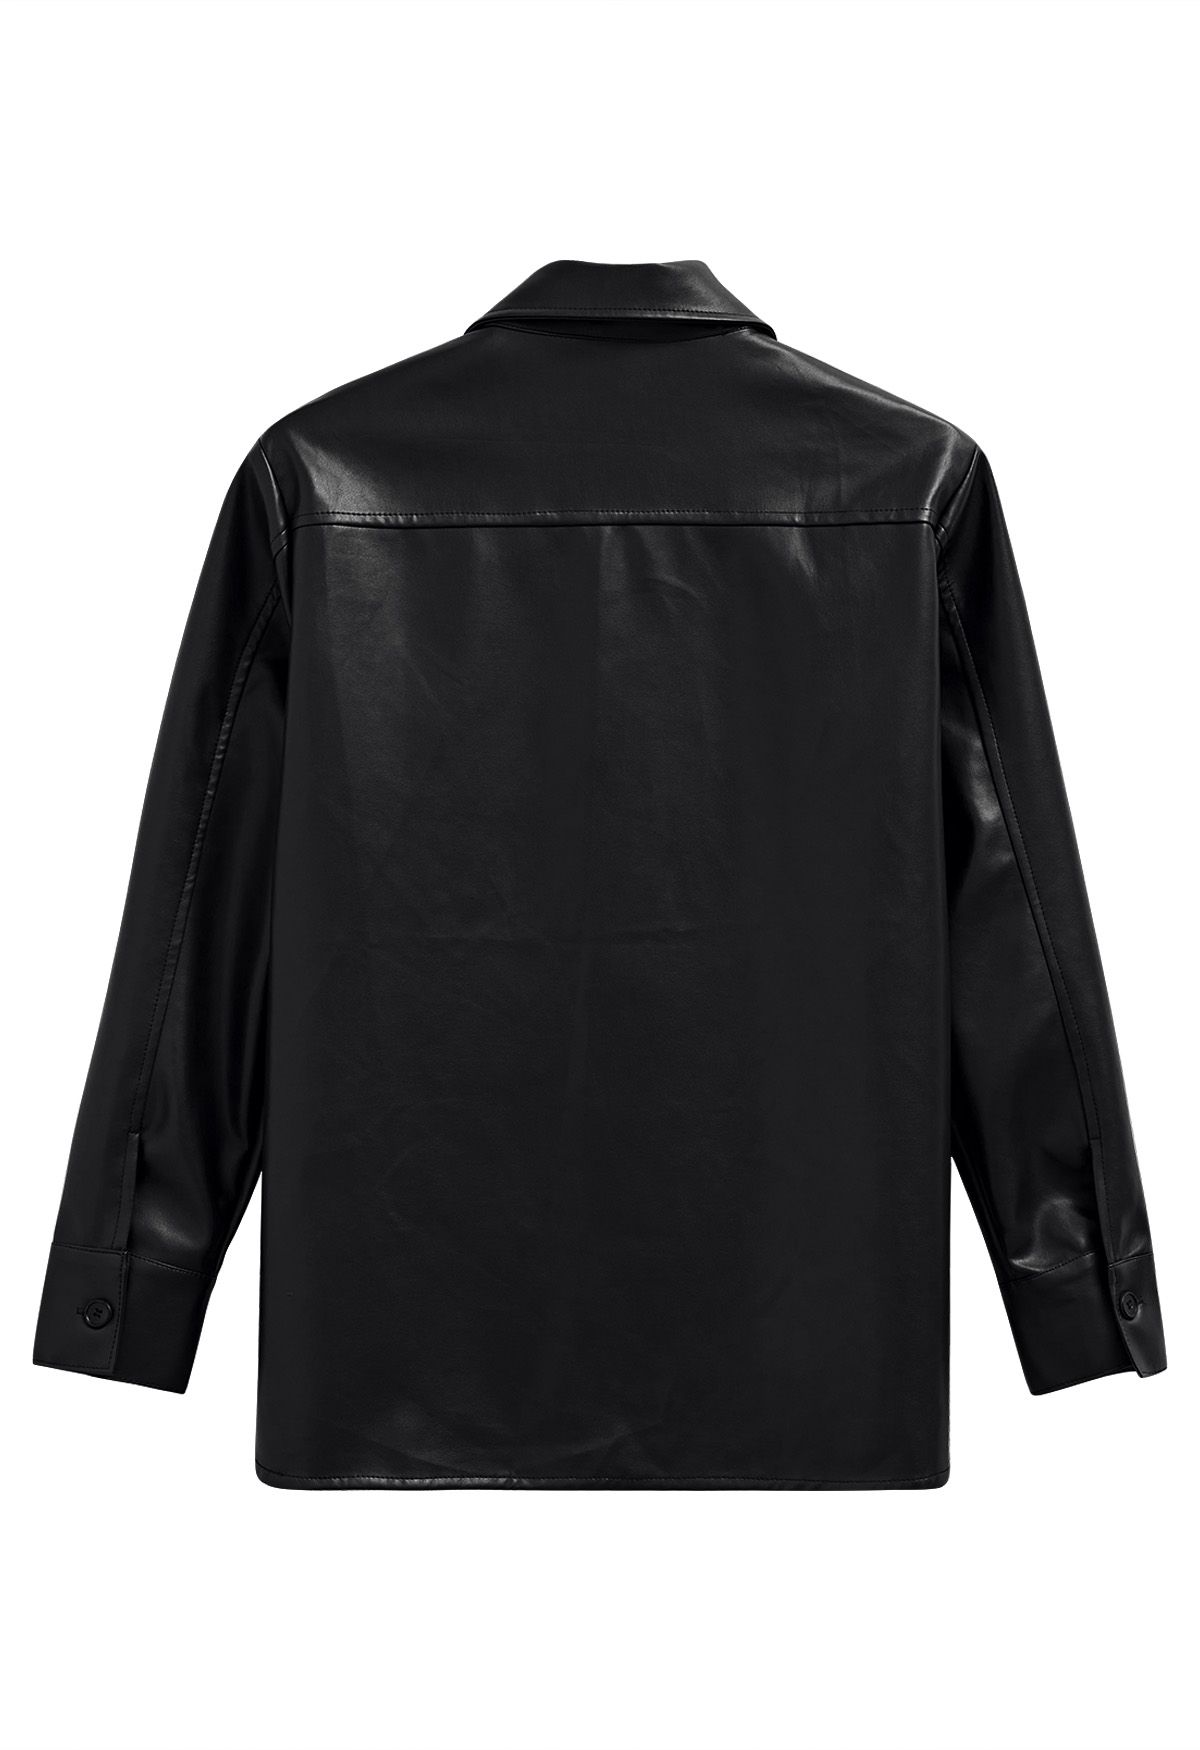 Chaqueta estilo camisa informal elegante de piel sintética en negro